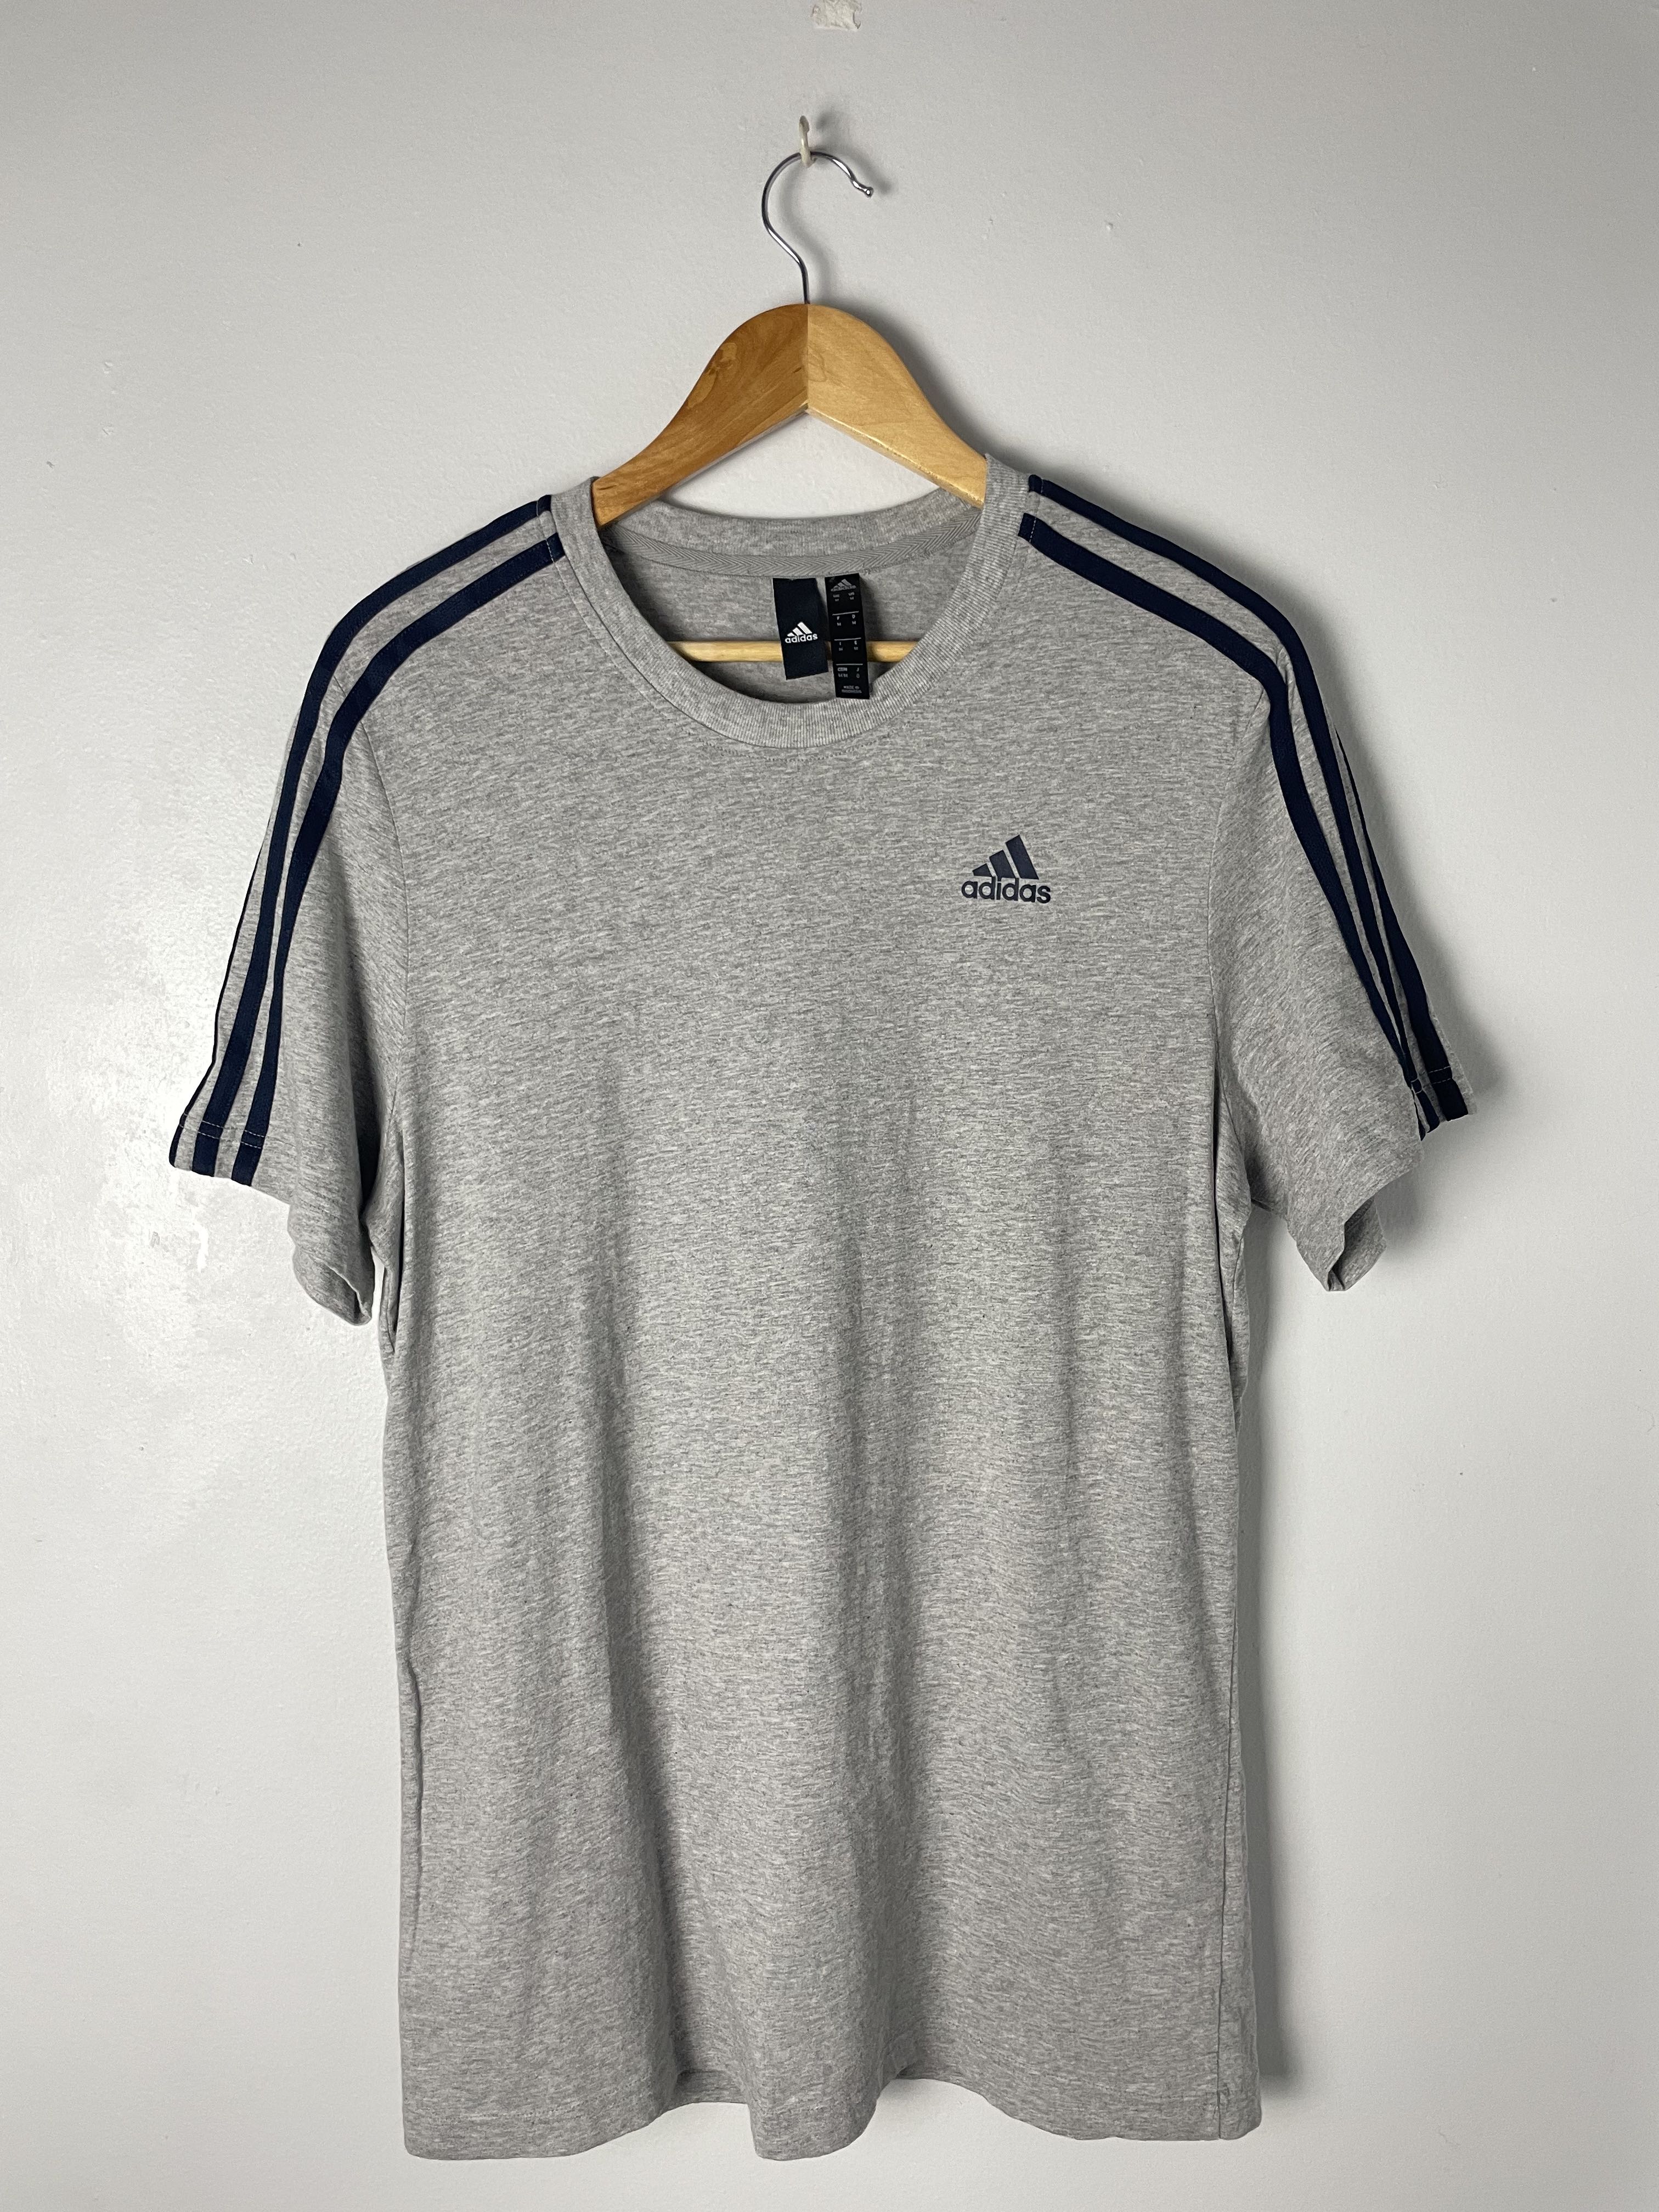 Adidas Three stripes Shirt, Men's Fashion, Tops & Sets, Tshirts & Polo ...